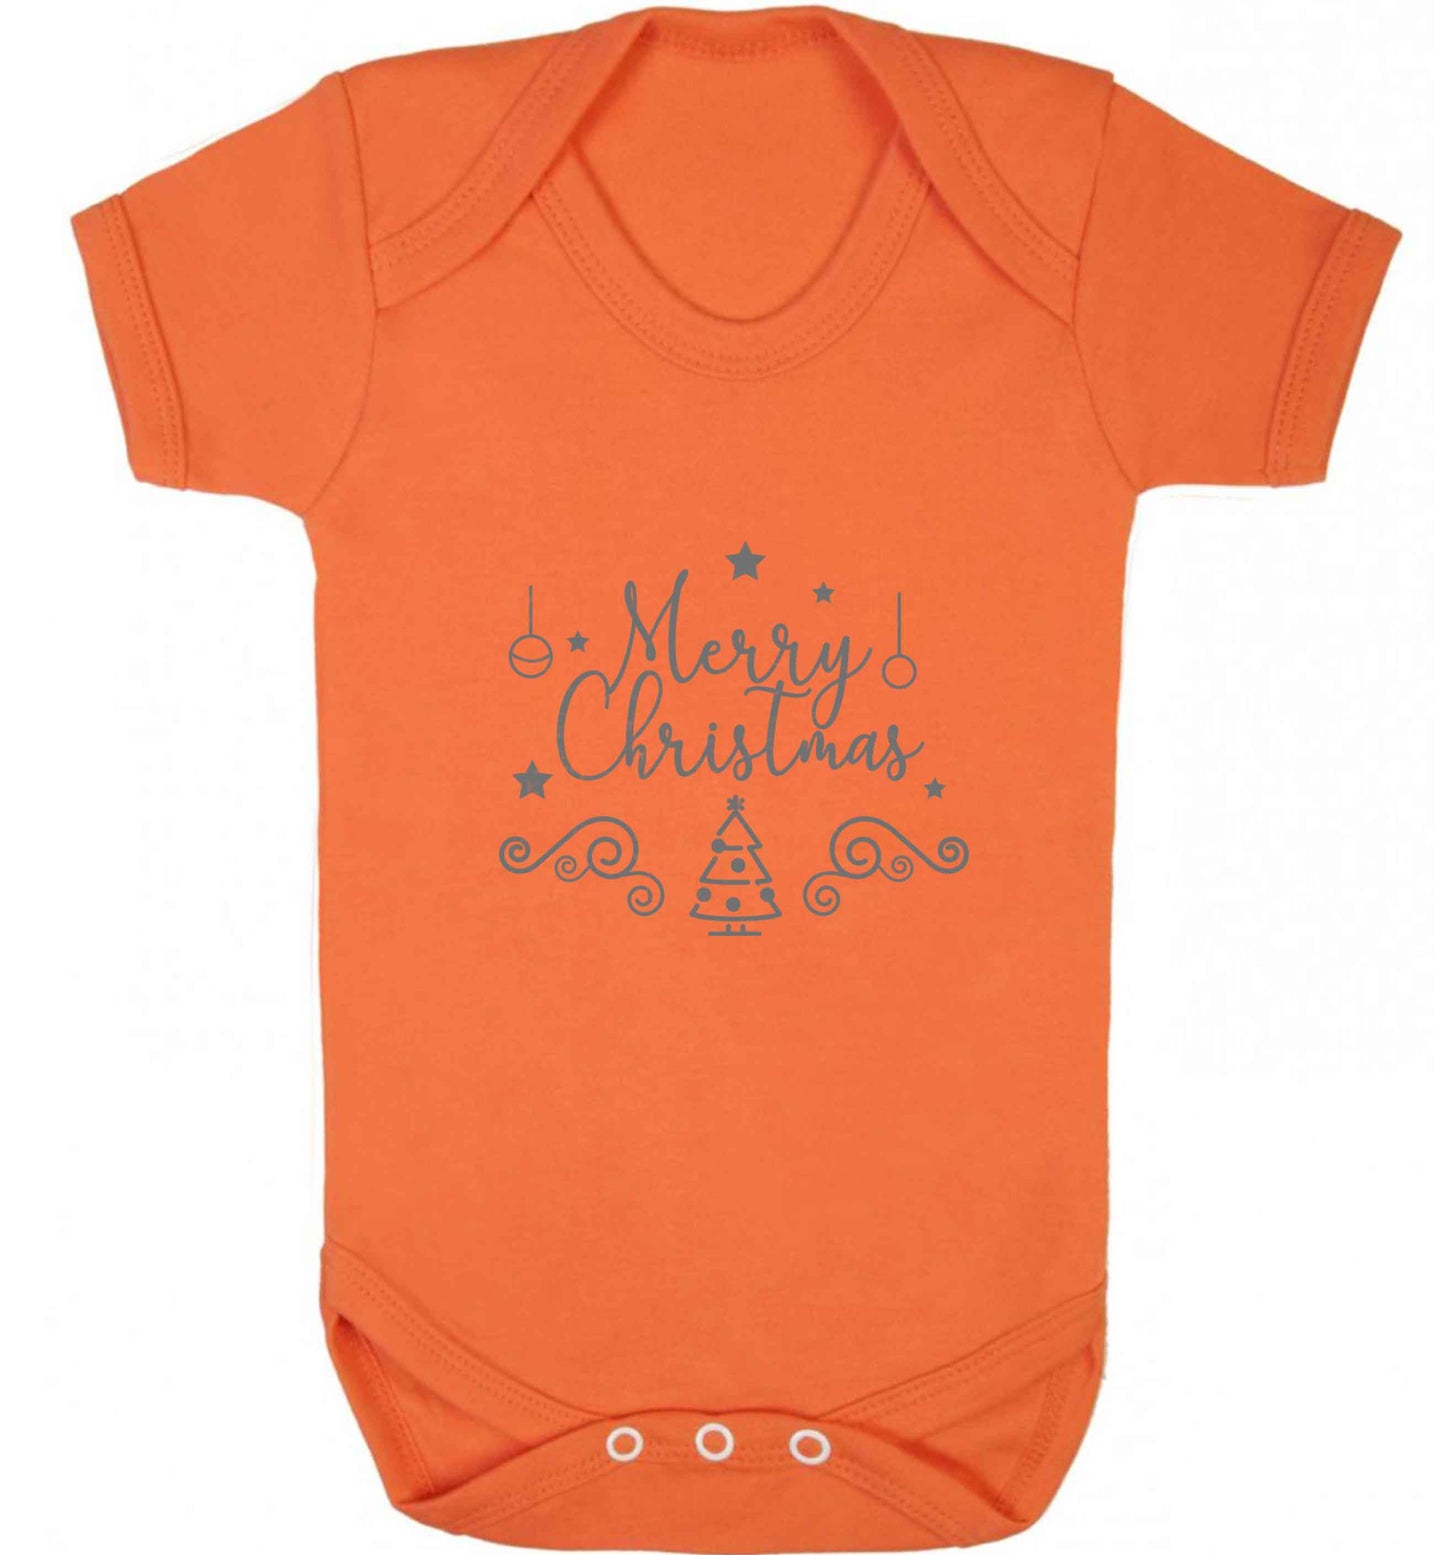 Happy New Year 2023 baby vest orange 18-24 months